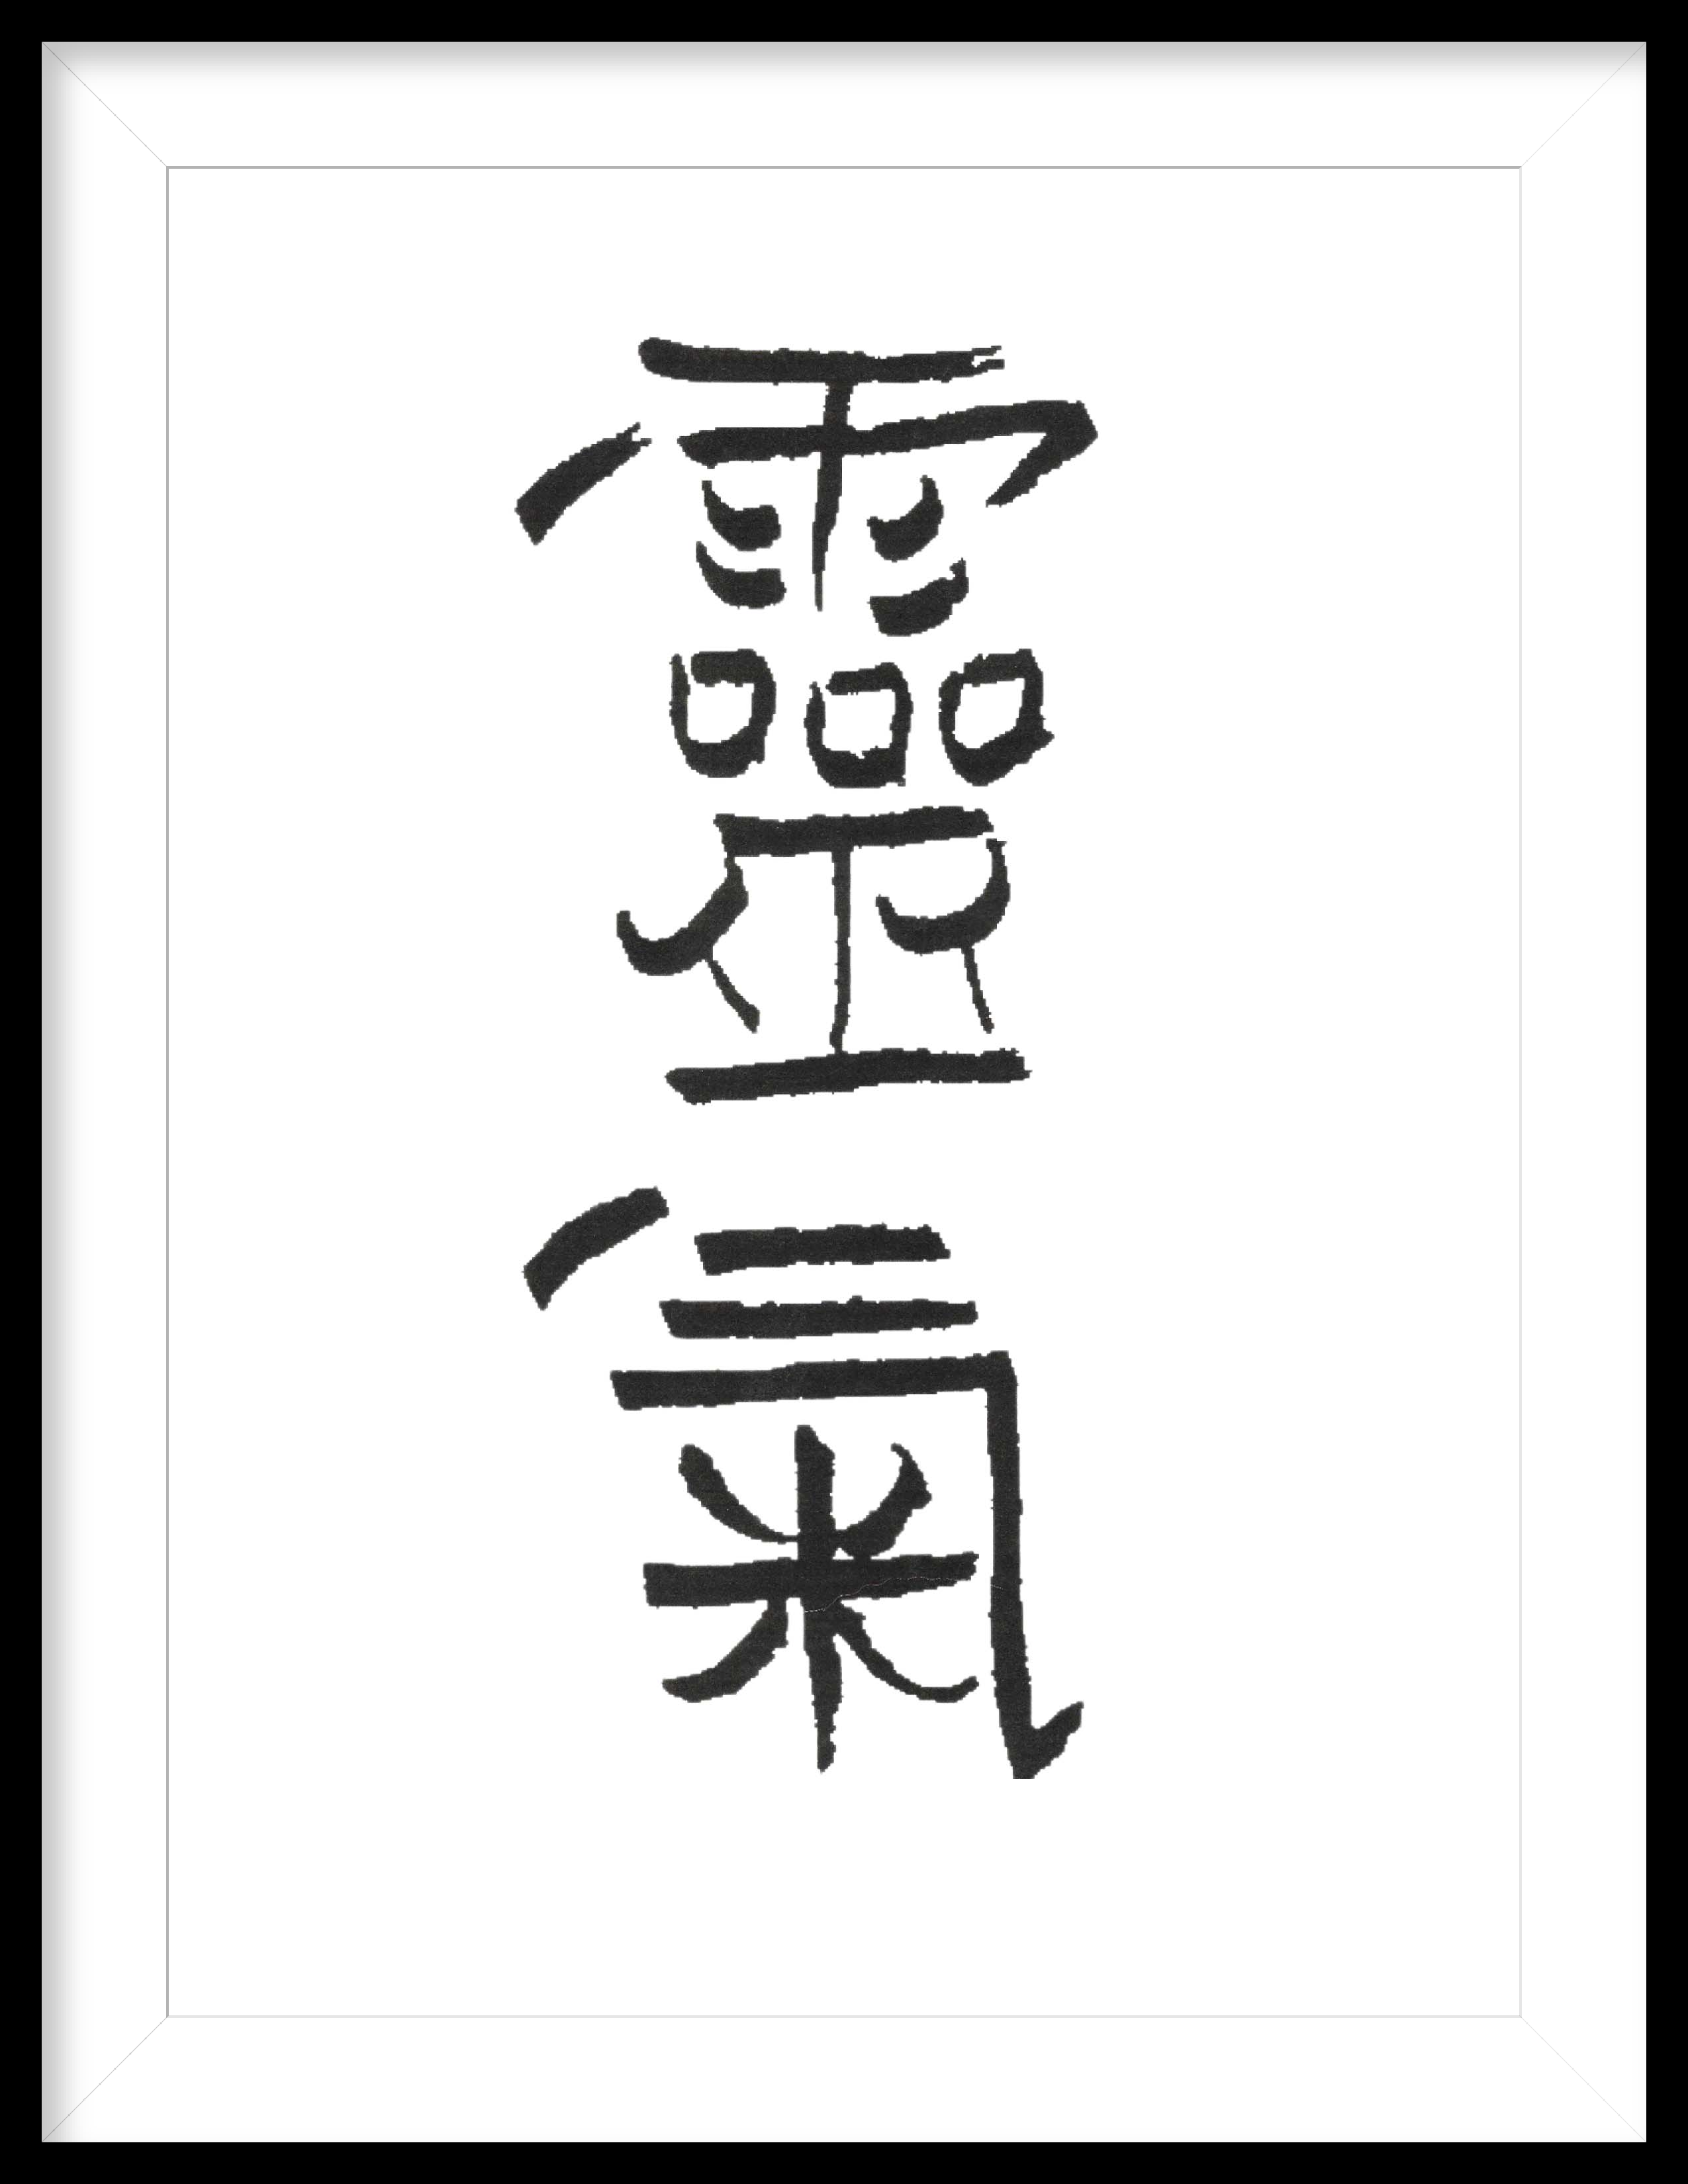 The symbol for Reiki written in Japanese